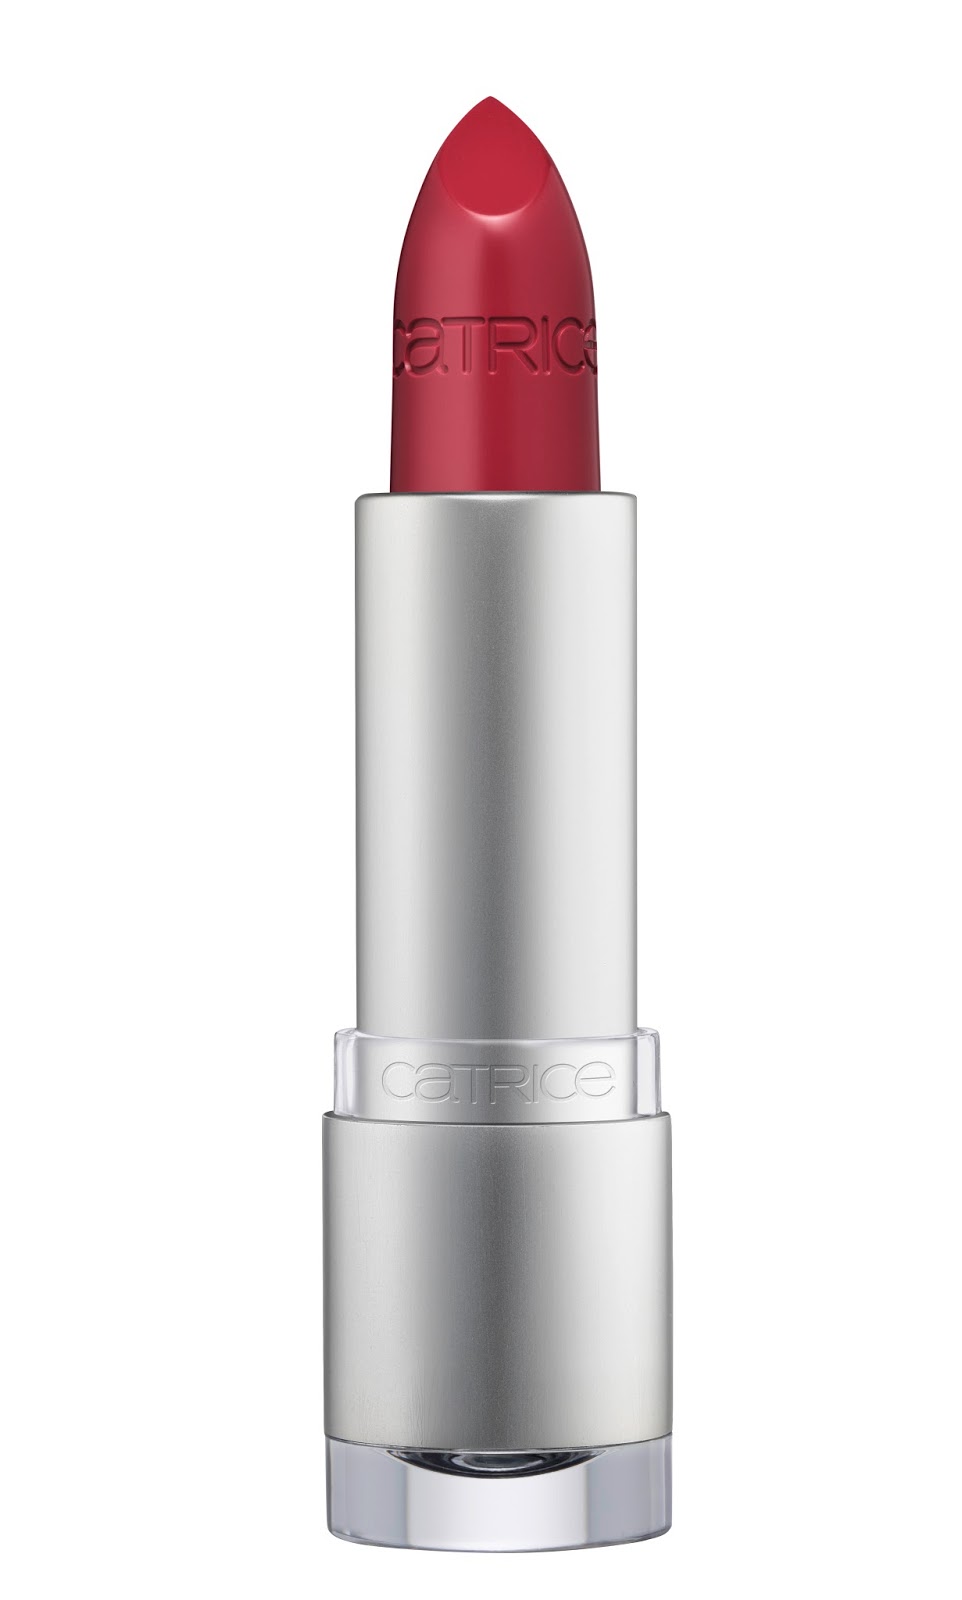 Catrice - Luminous Lips Lipstick